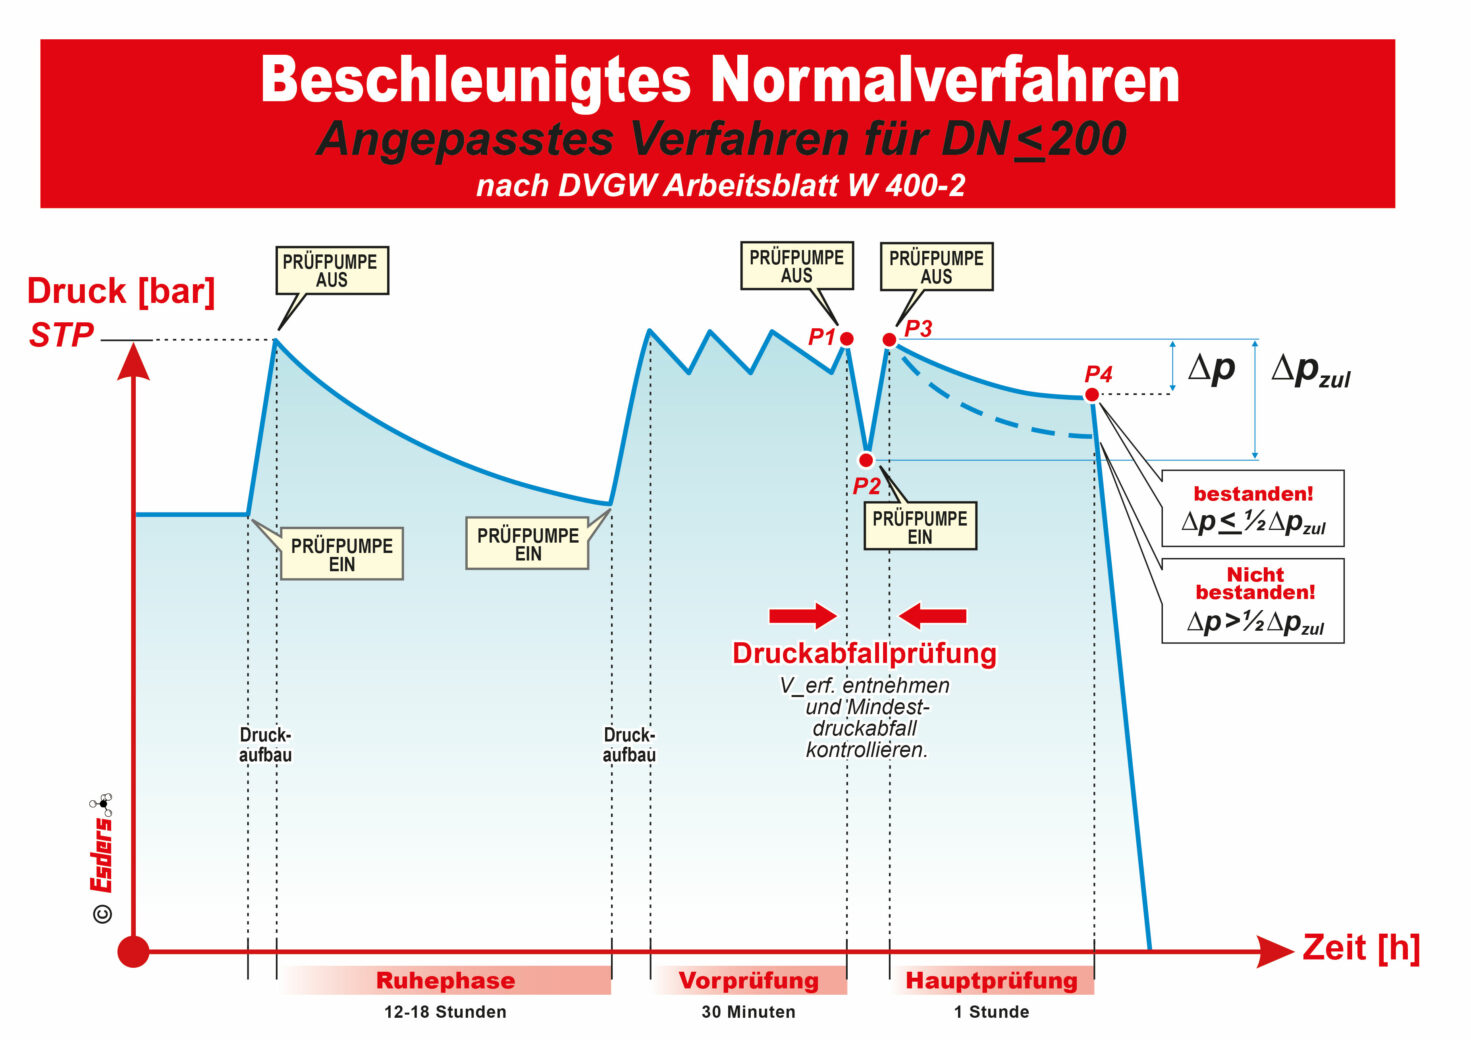 Schaubild Angepasstes Verfahren BNV für DN 200